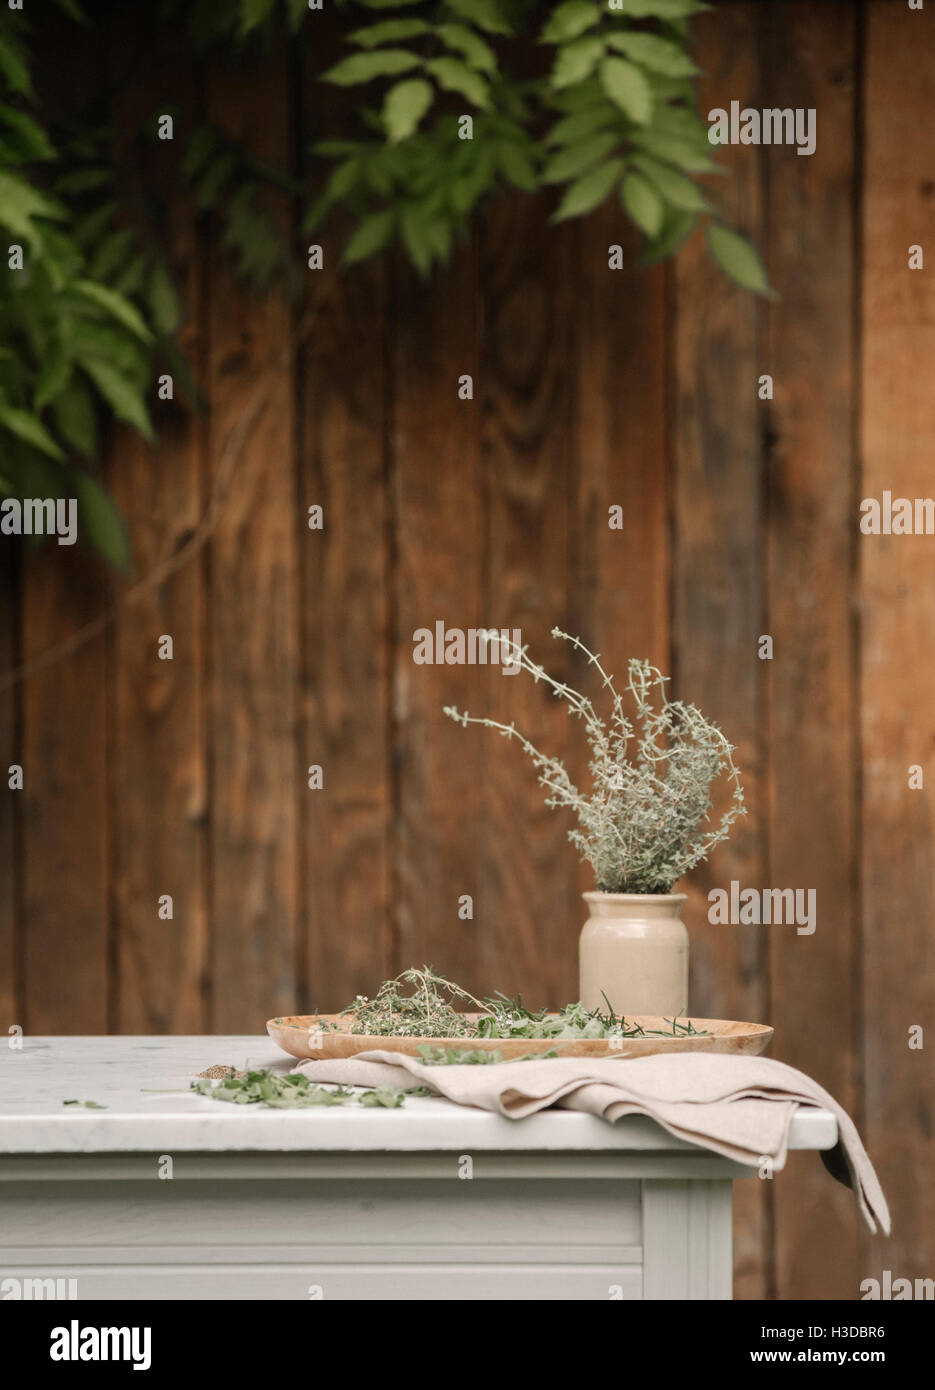 Ein Gartenzaun, einen Tisch und Kräuter in ein Glas. Stockfoto